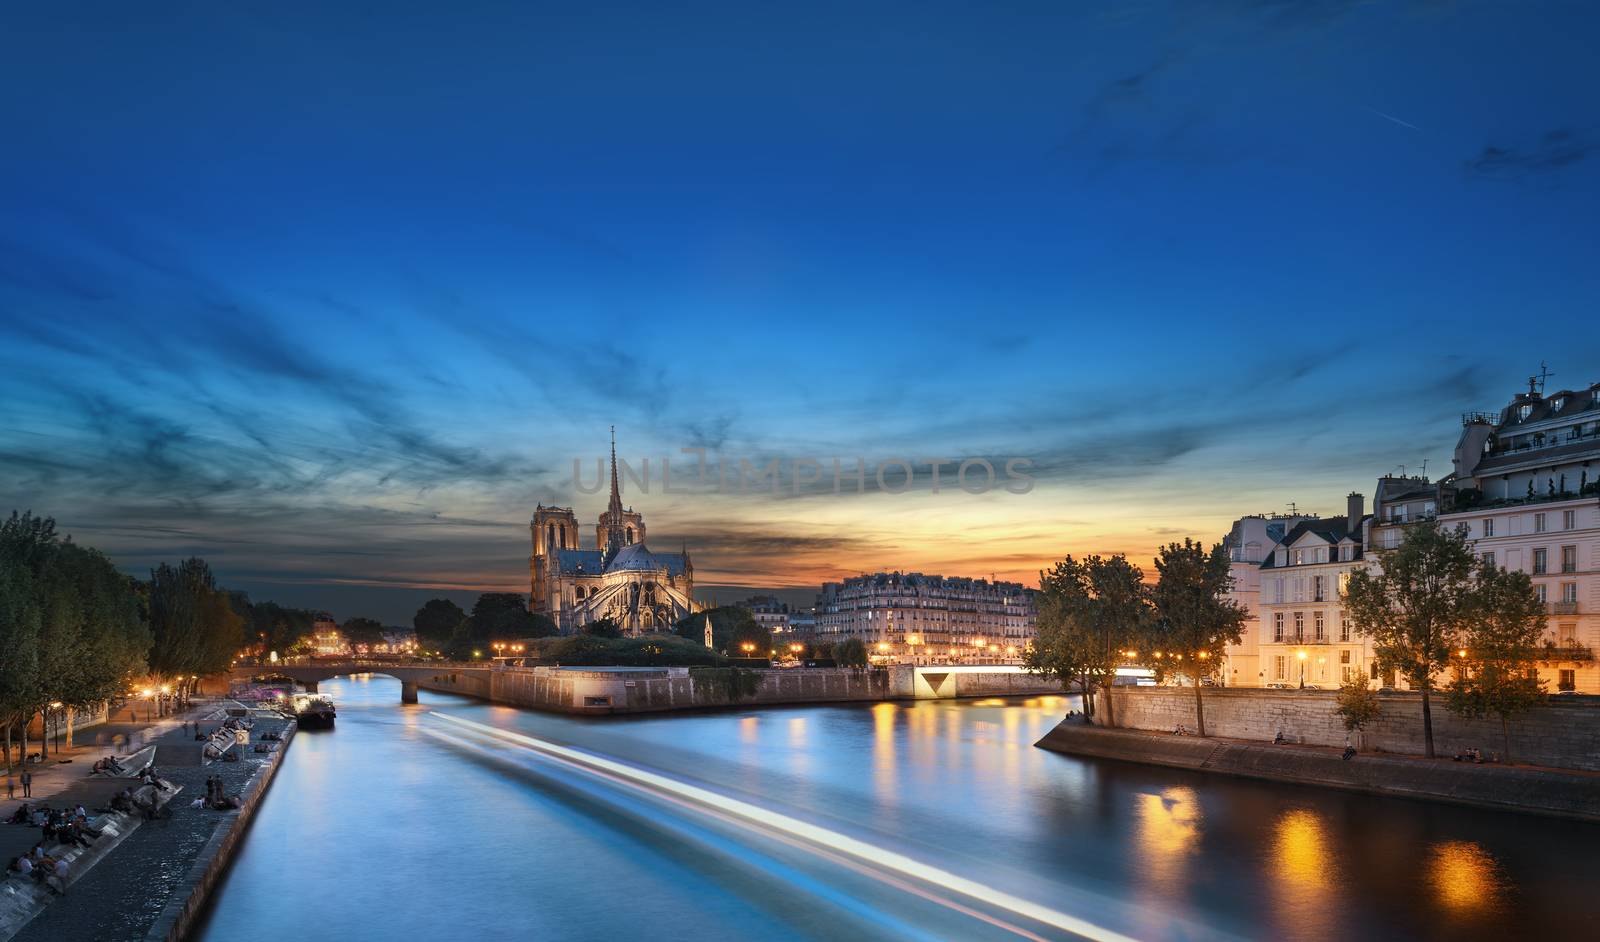 Notre Dame de Paris, France by ventdusud